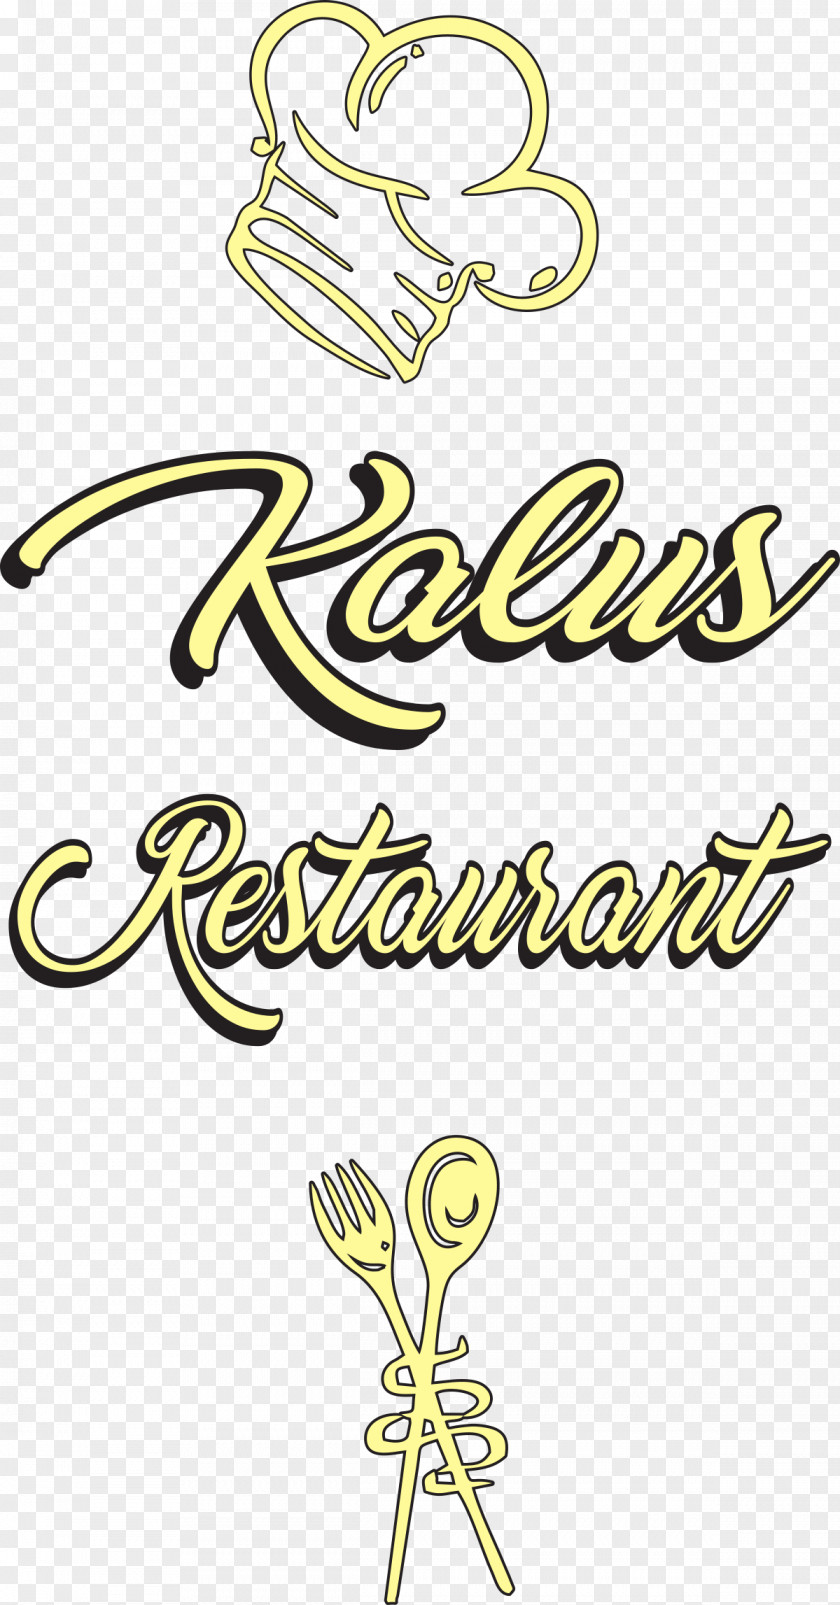 Kitchen Kalus Restaurant Cabinet Durchreiche Archiveprocess PNG